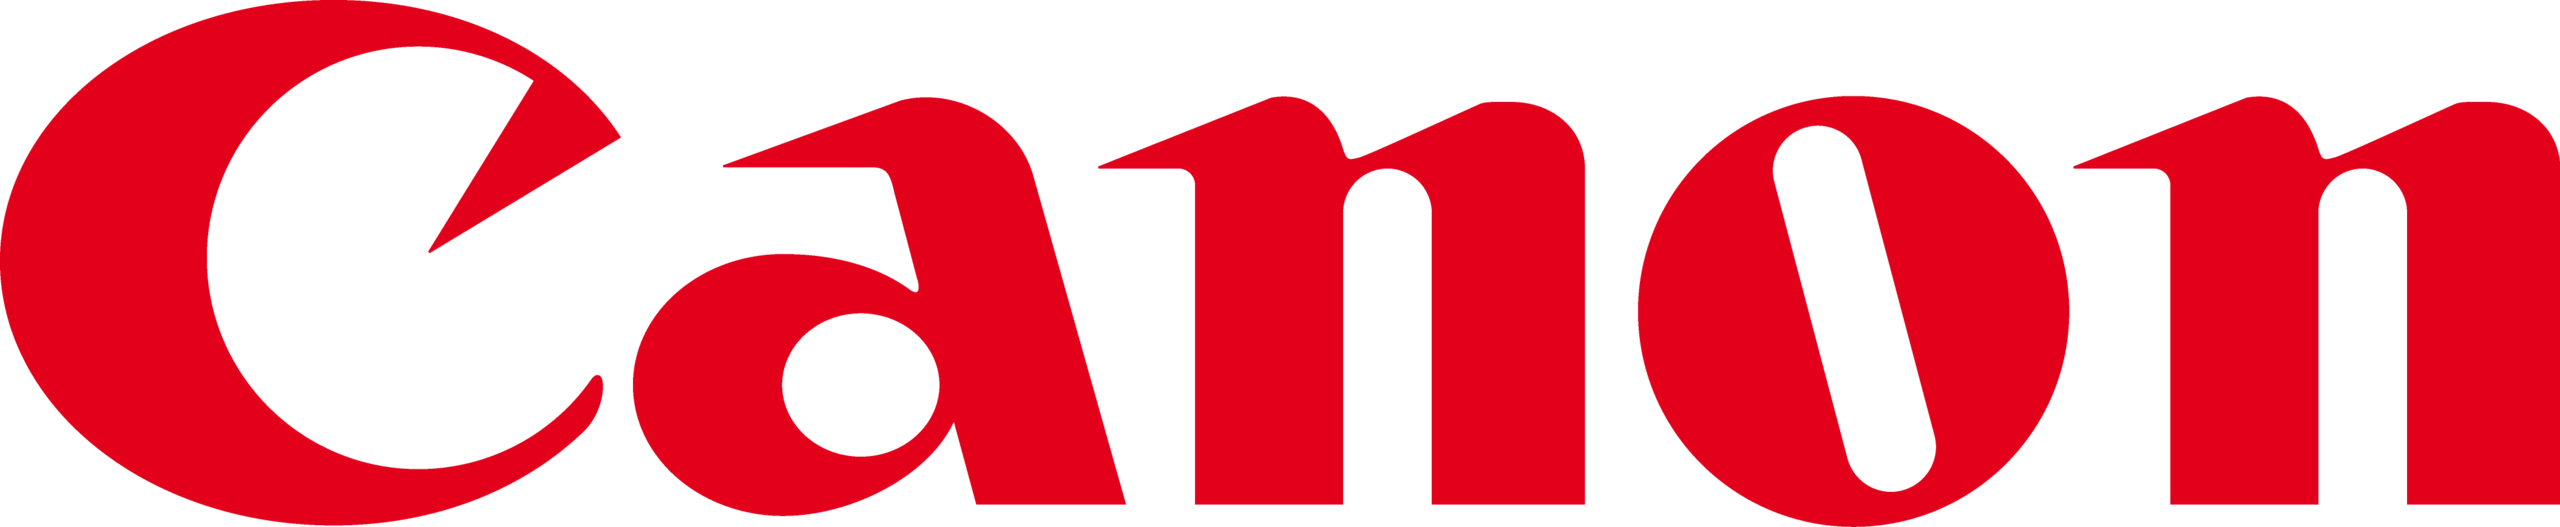 Canon Logo - Canon Logo Hd Png (2560x527)